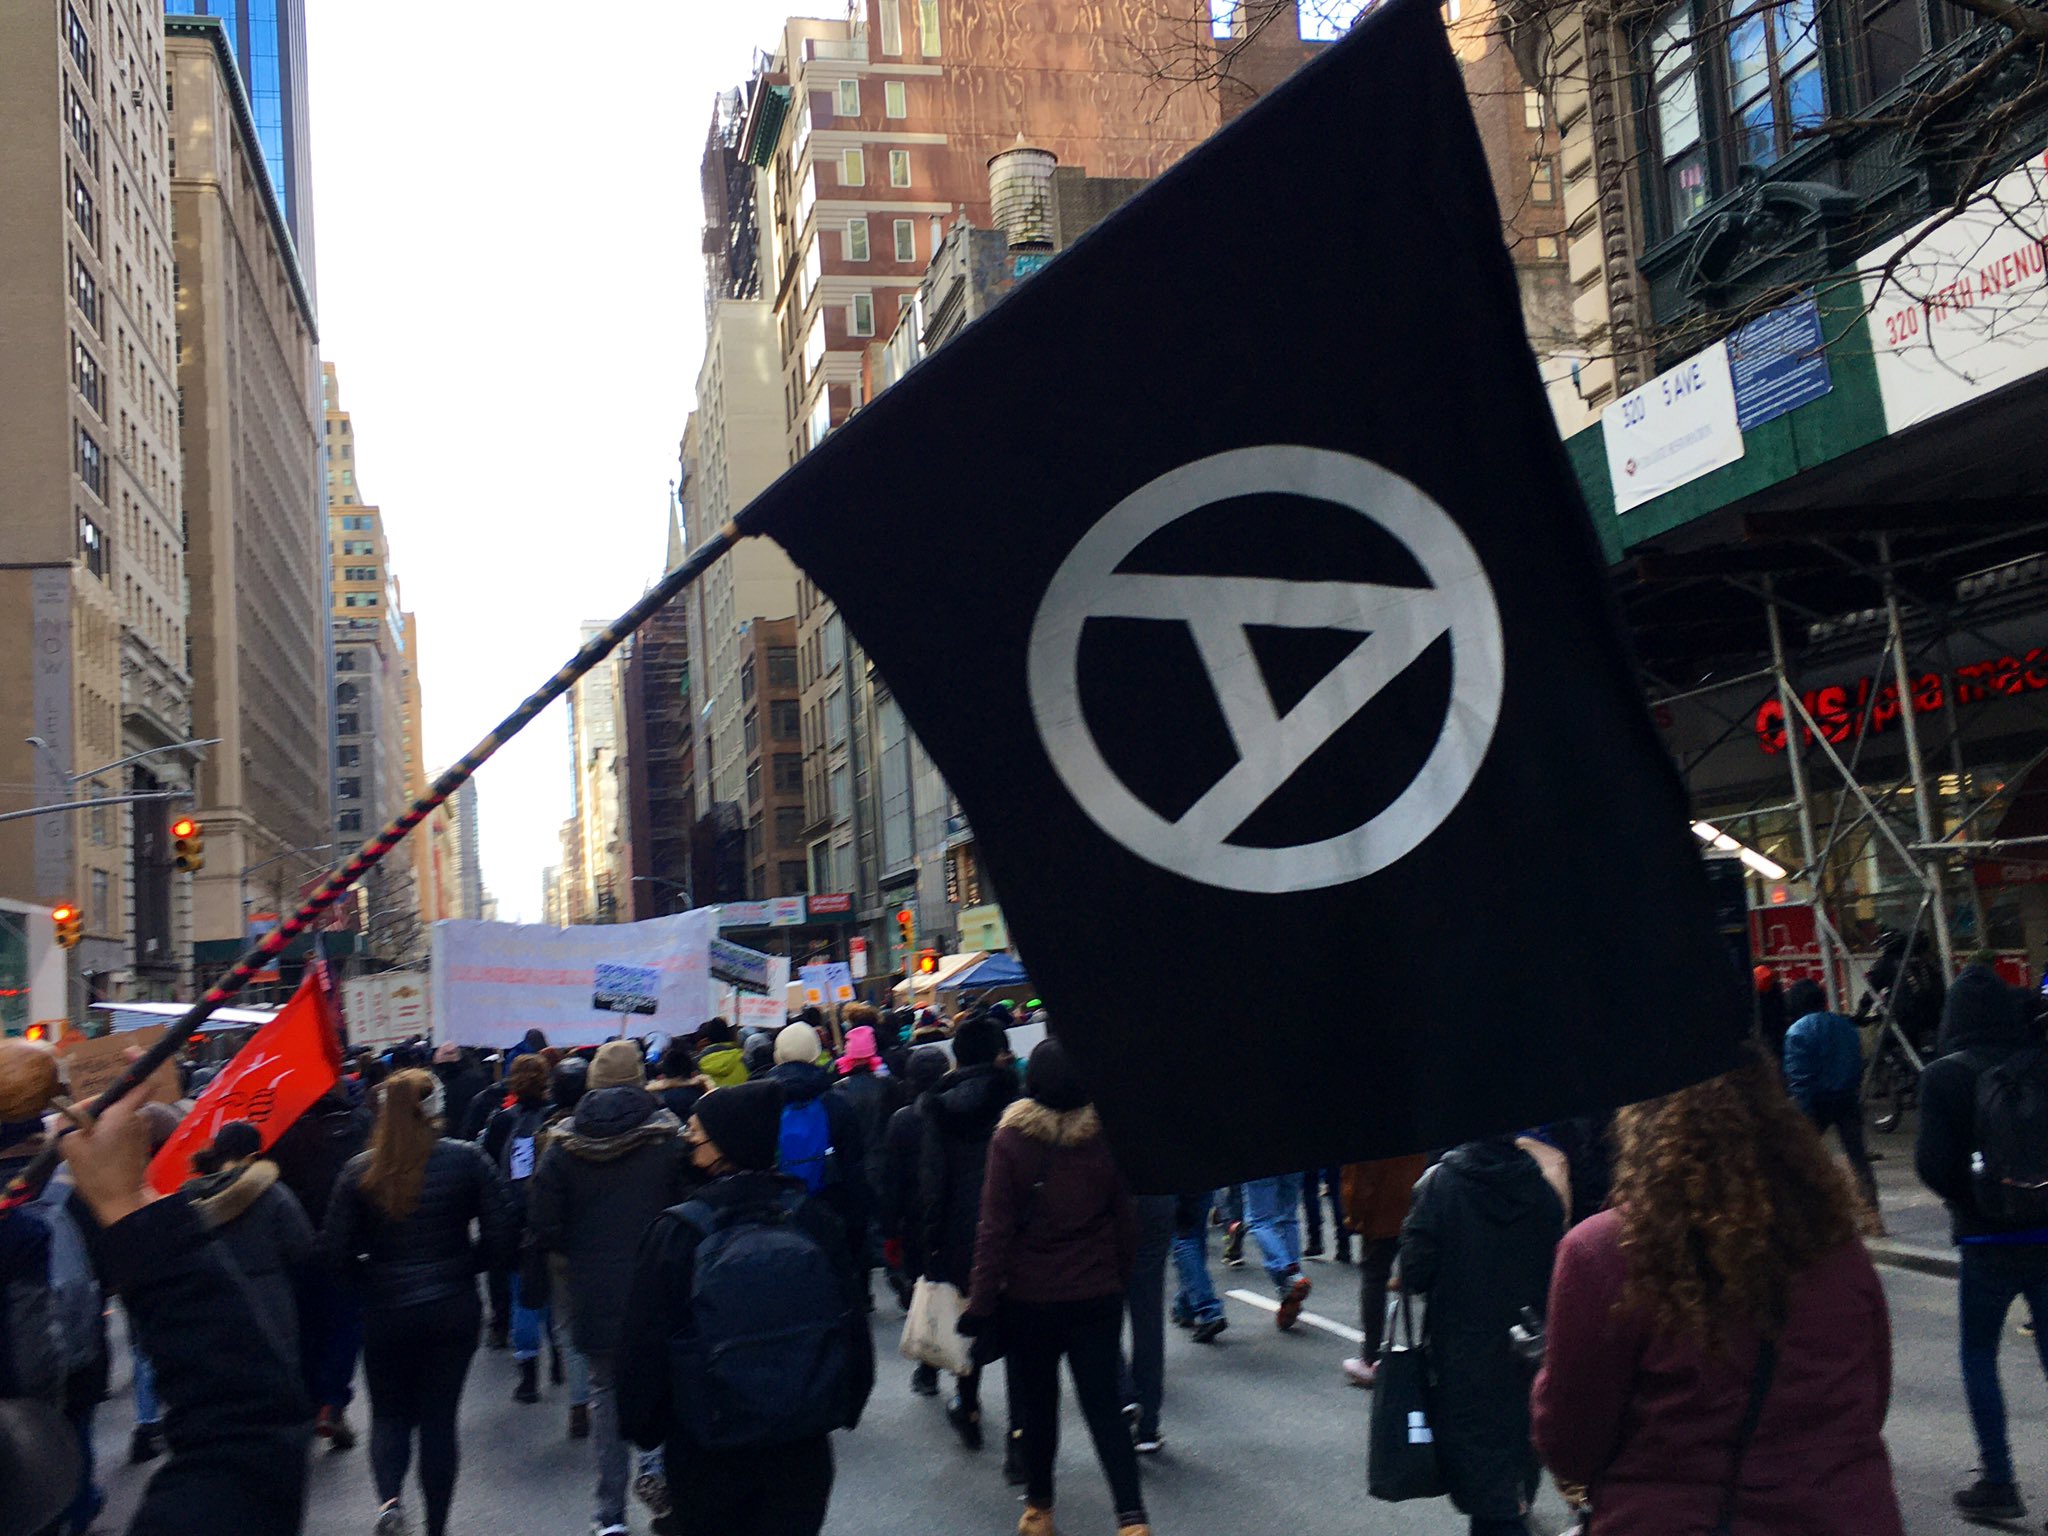 New York’ta faşistlerin eylem yapacağı haberi üzerine düzenlenen anti-faşist yürüyüşe yüzlerce kişi katıldı